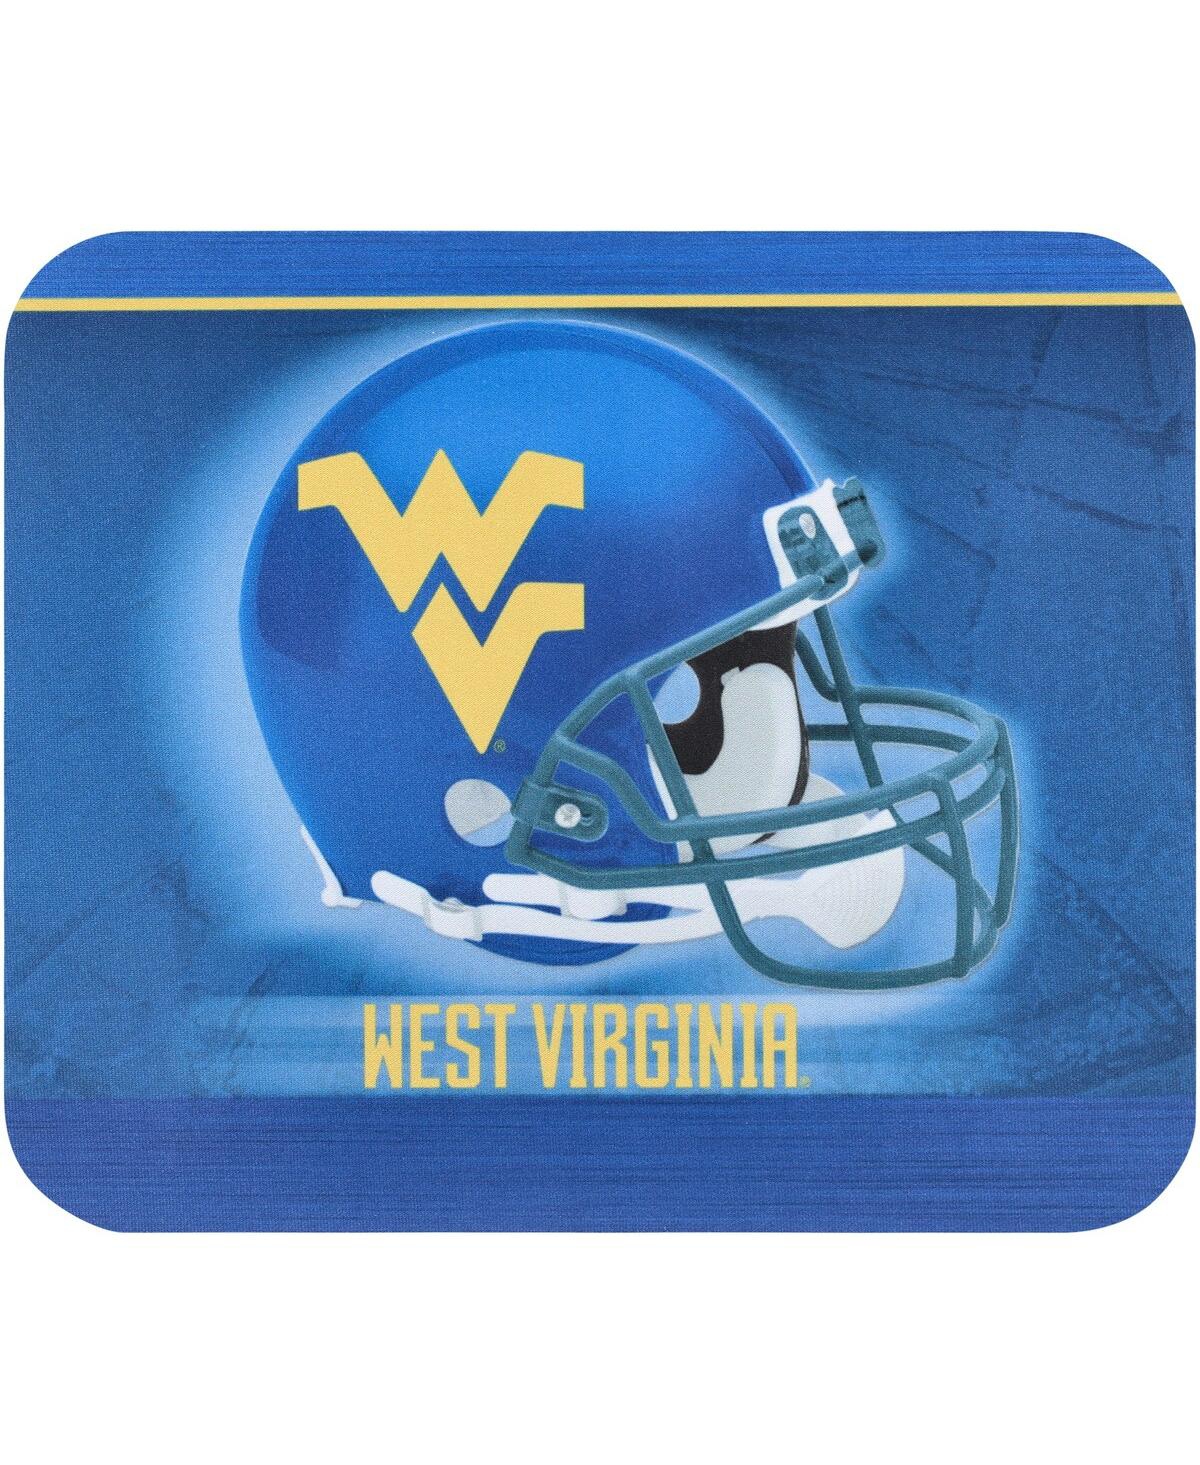 West Virginia Mountaineers Helmet Mouse Pad - Blue